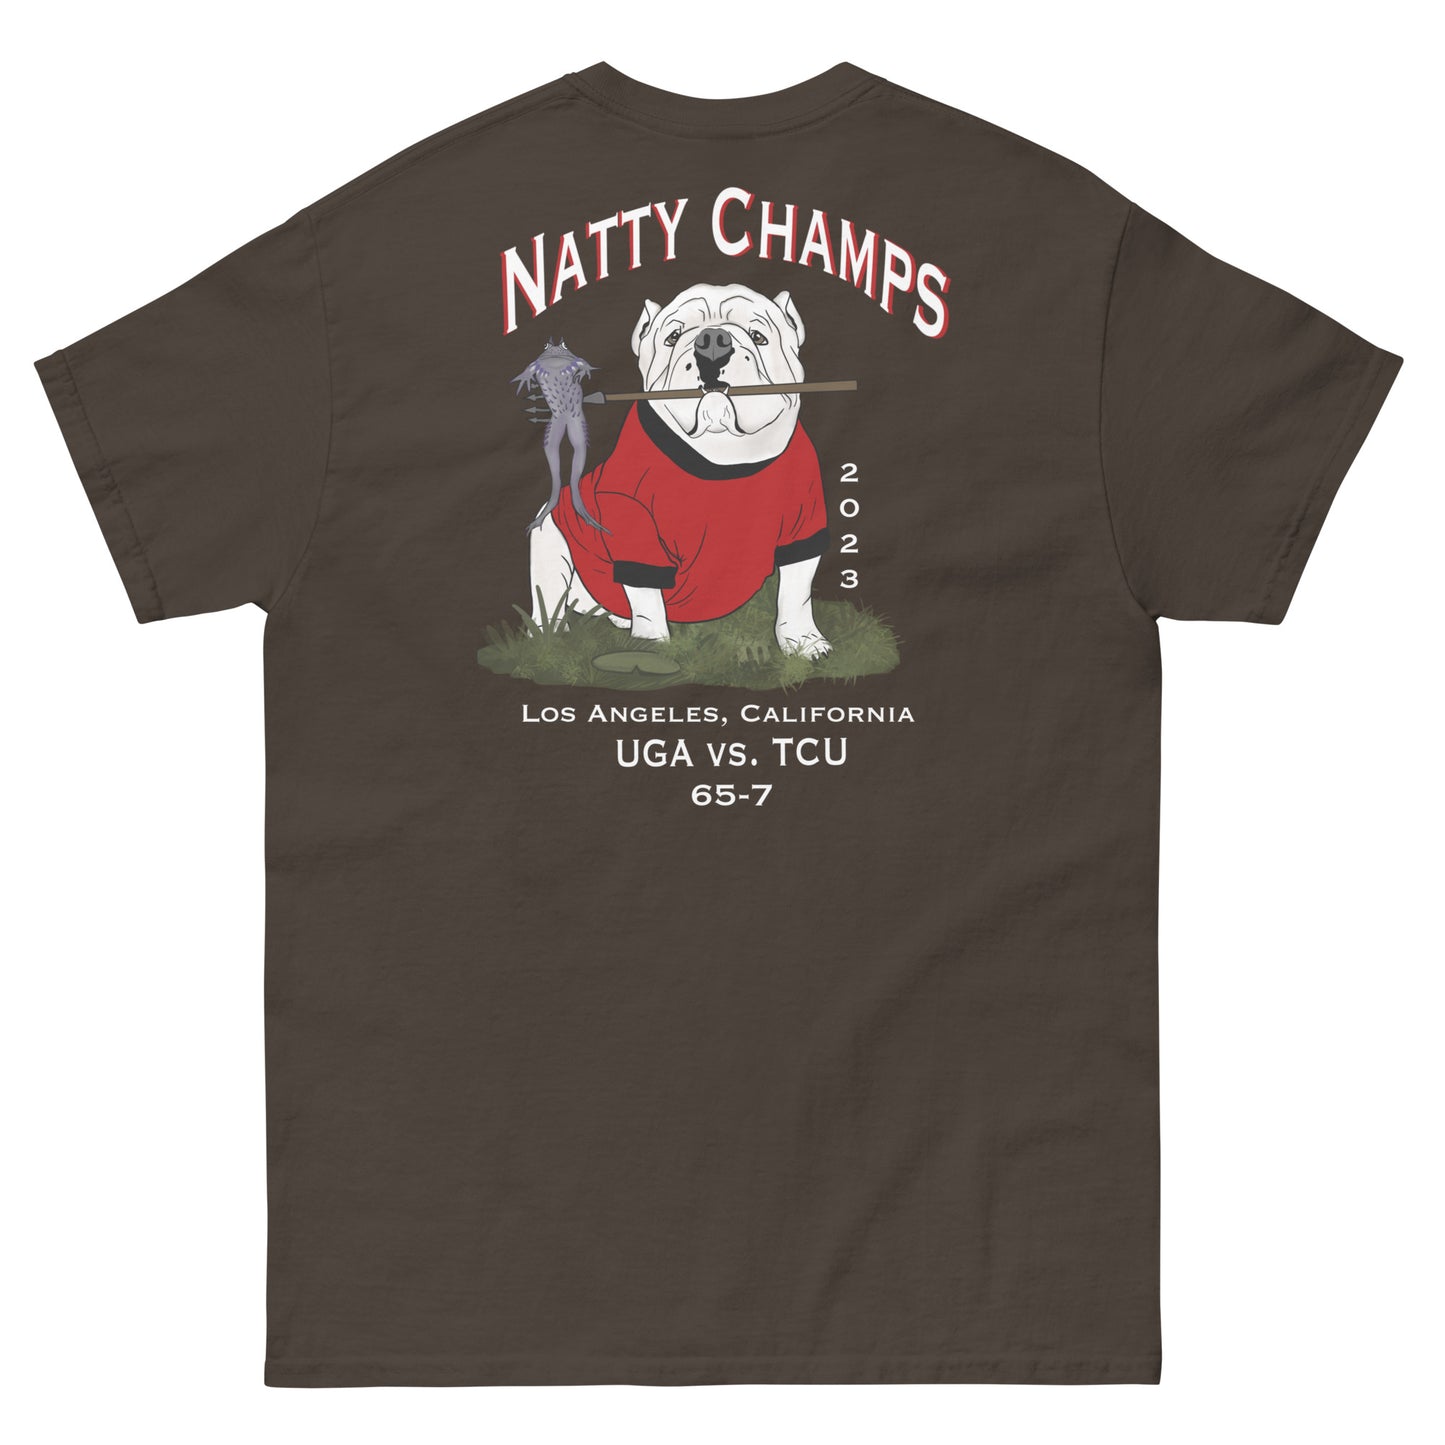 Natty Champ shirt